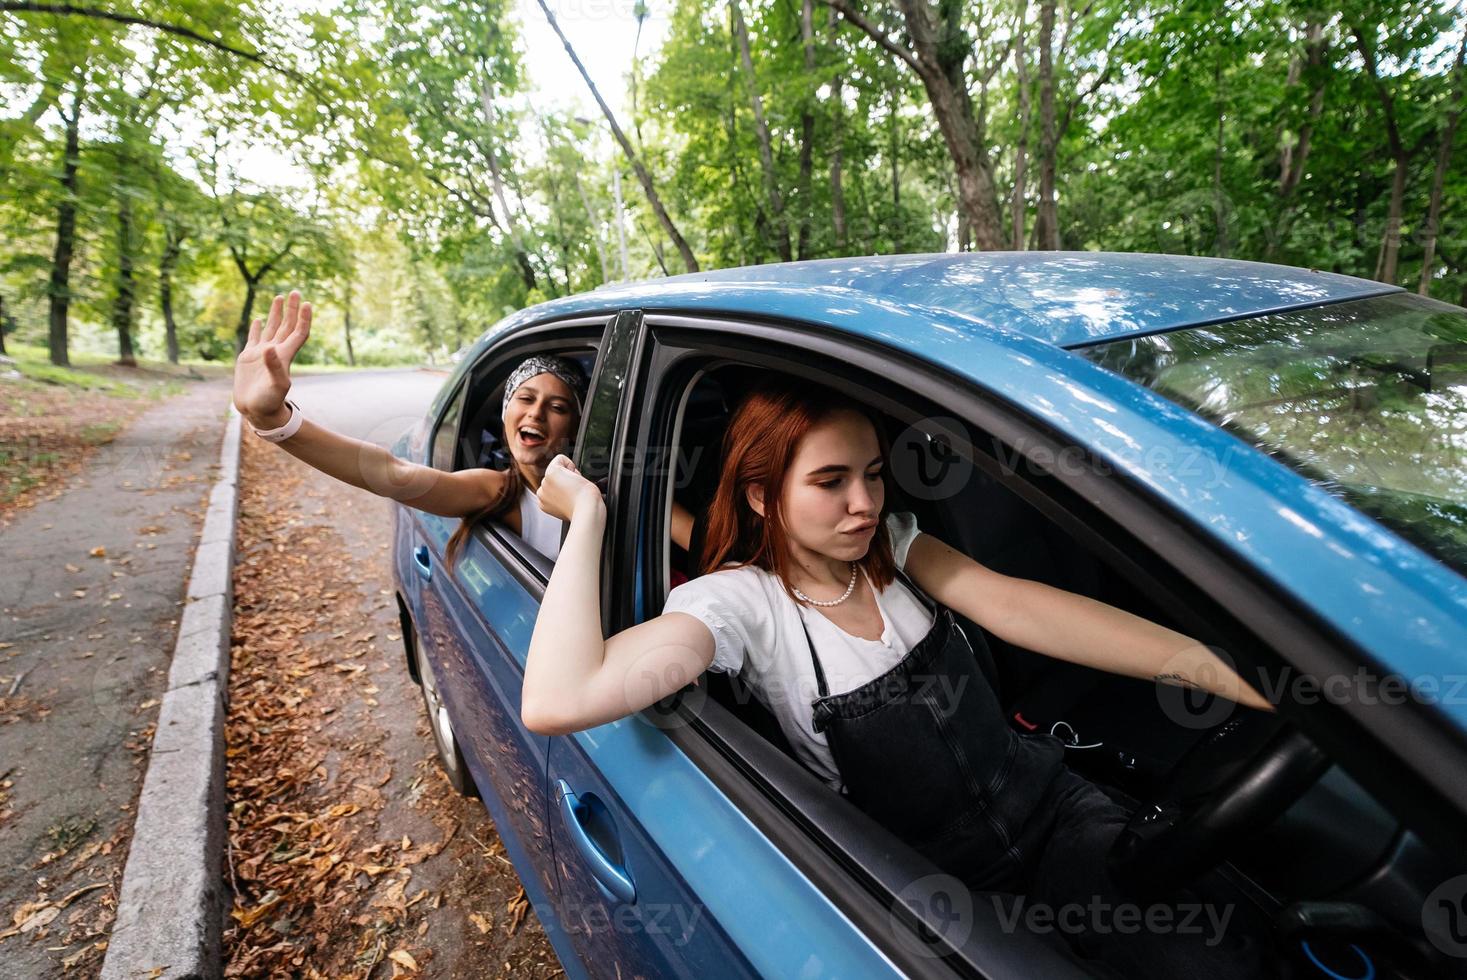 duas namoradas brincam e riem juntas em um carro foto